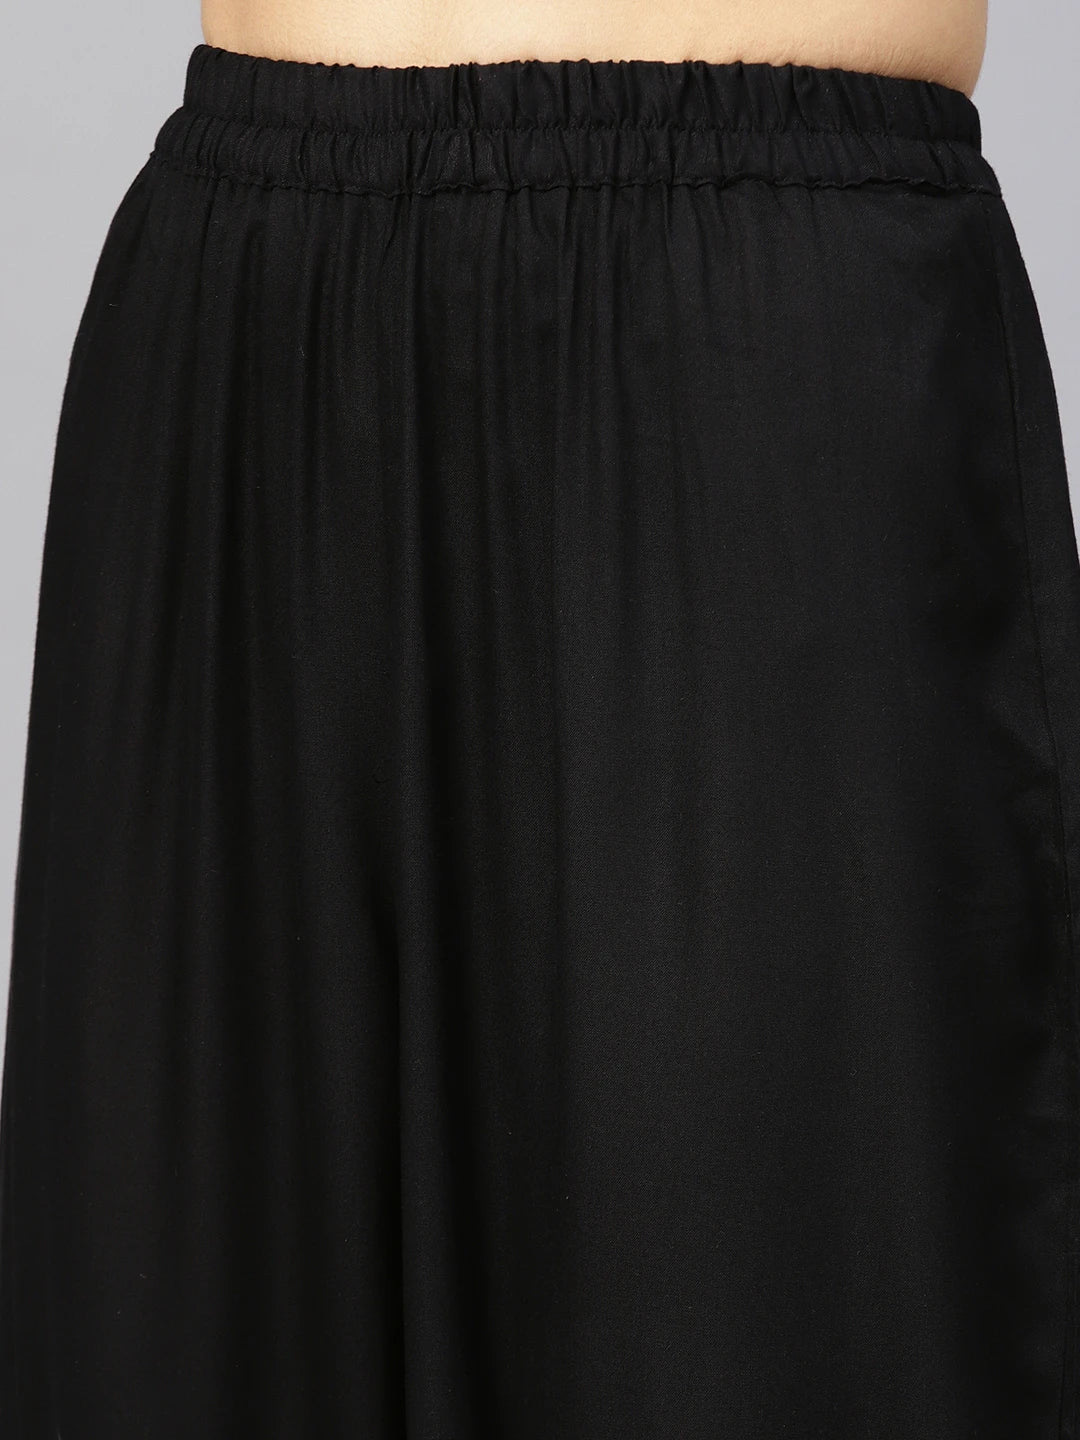 Womens Black Flared Dress from Idalia_ IDDR1145